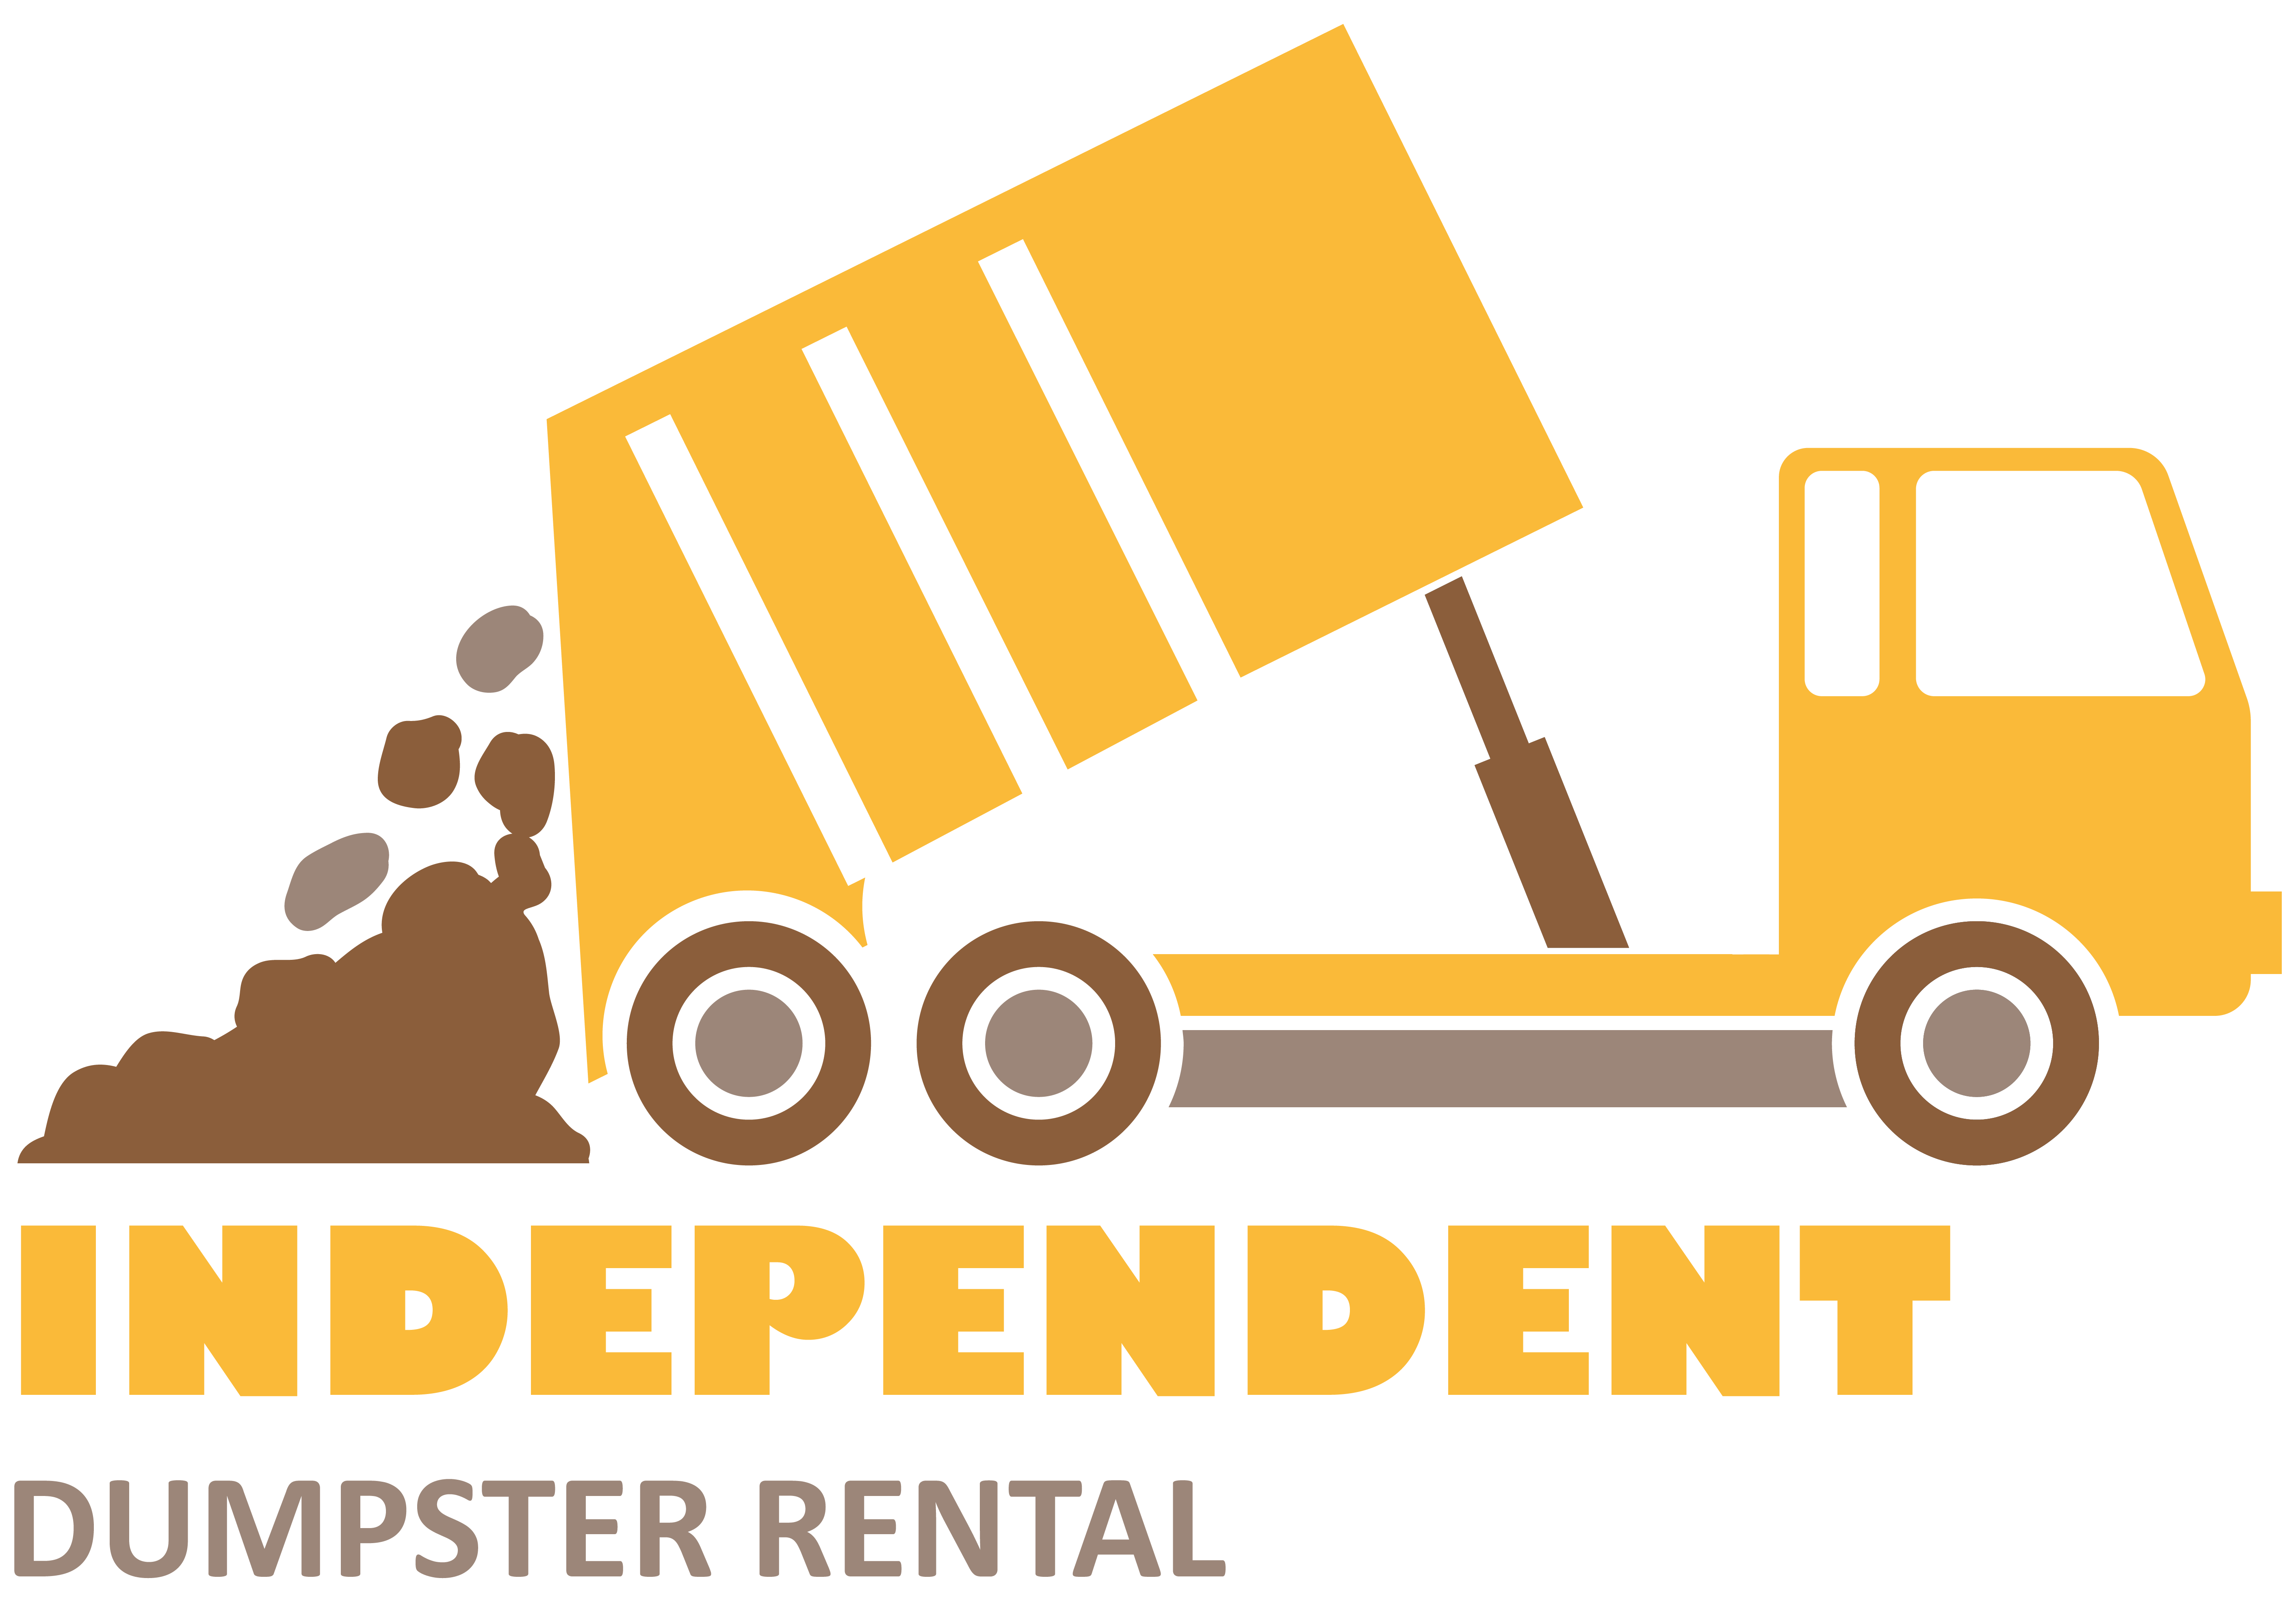 Dumpster Rentals  Pop Up Dumpster, LLC